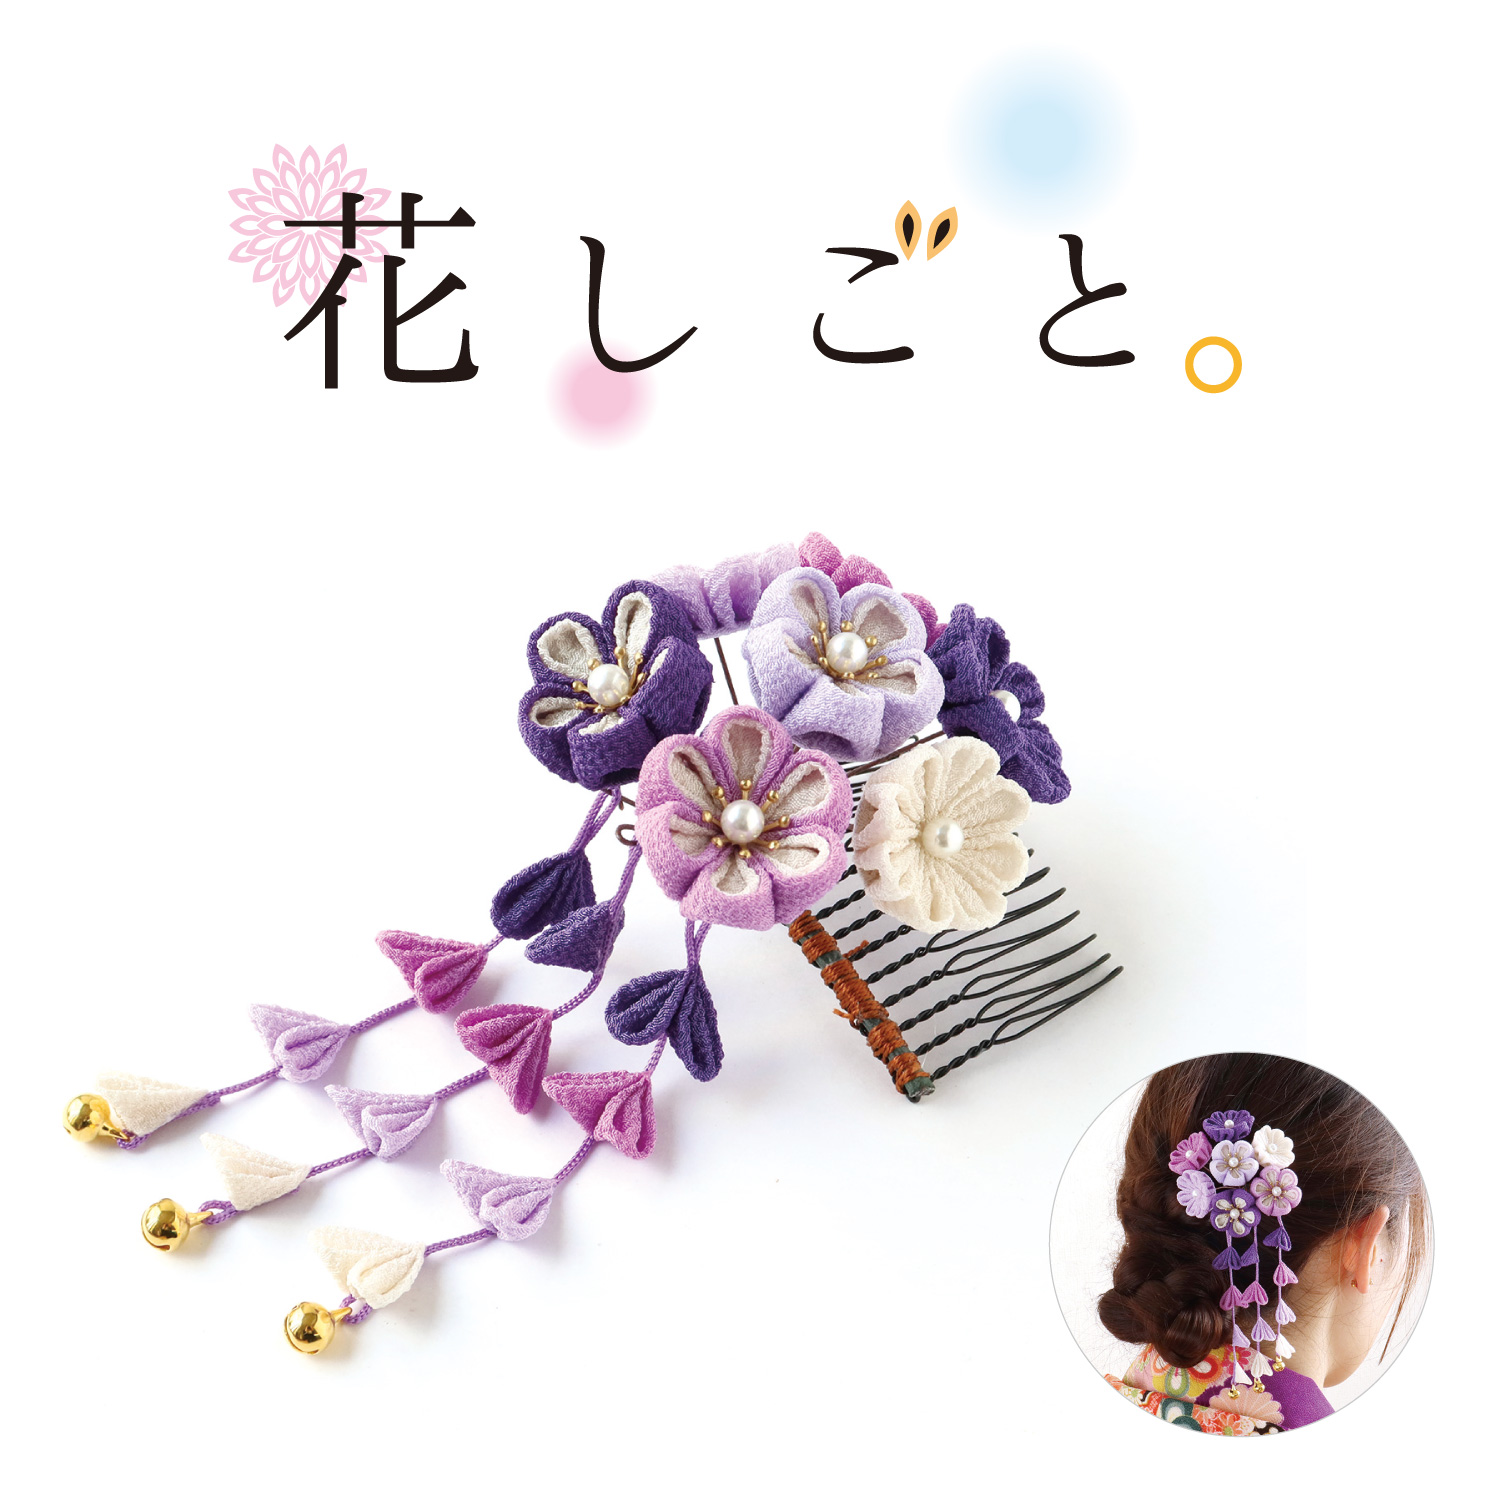 S50-9 つまみ細工キット「花しごと」29 藤紫の花束コーム (袋)